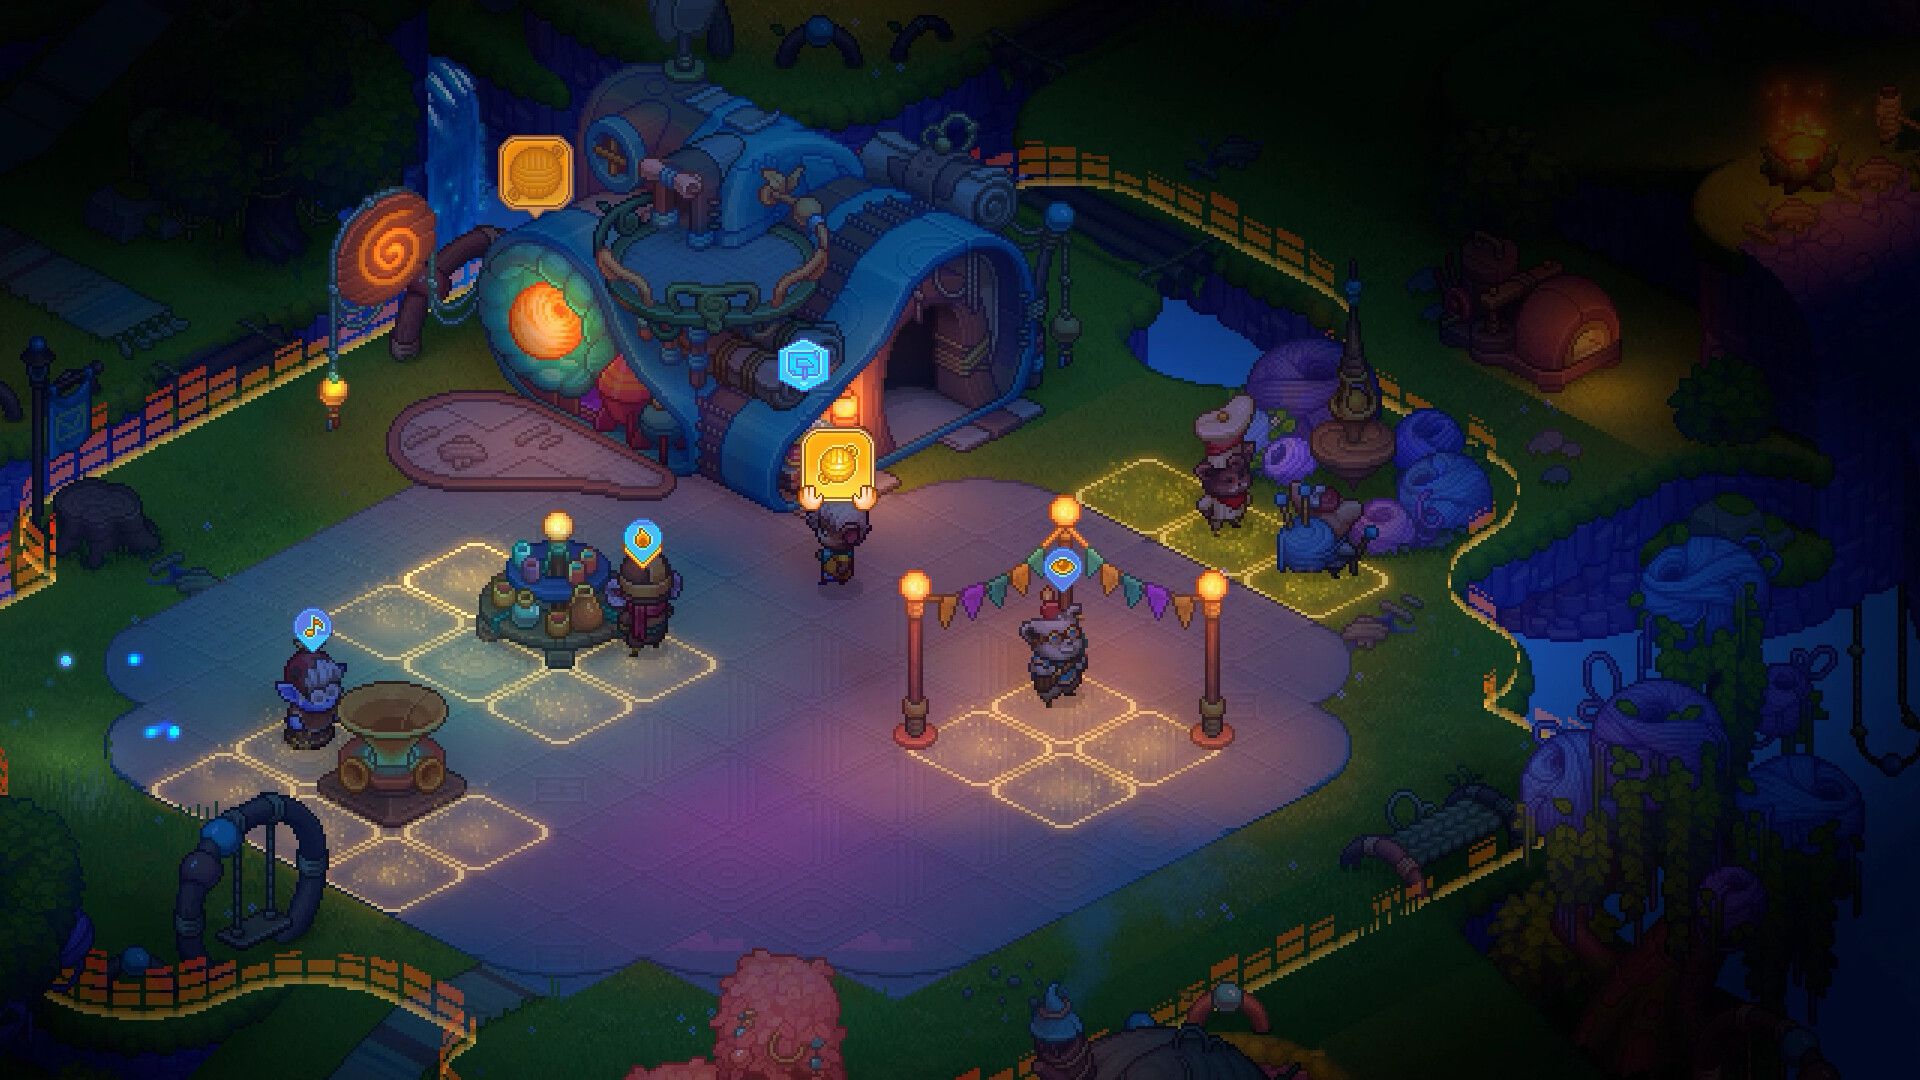 Une fête nocturne dans Bandle Tale: Une histoire de League of Legends, avec des stations installées pour que les invités se rassemblent et s'amusent.